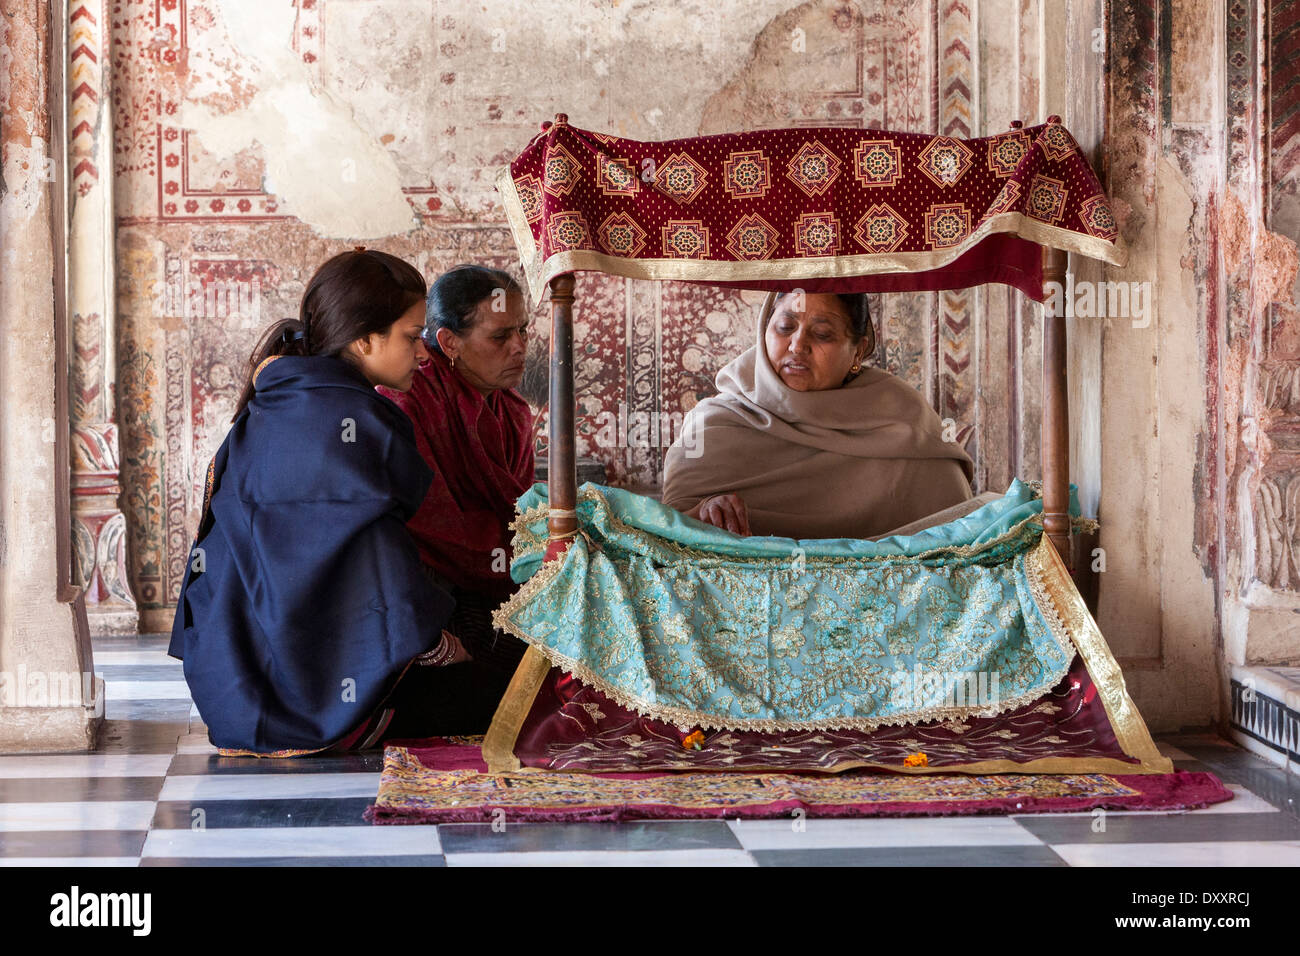 L'Inde, Dehradun. Femme lisant la Sainte Écriture à deux les visiteurs à l'entrée du sanctuaire intérieur d'un temple sikh. Banque D'Images